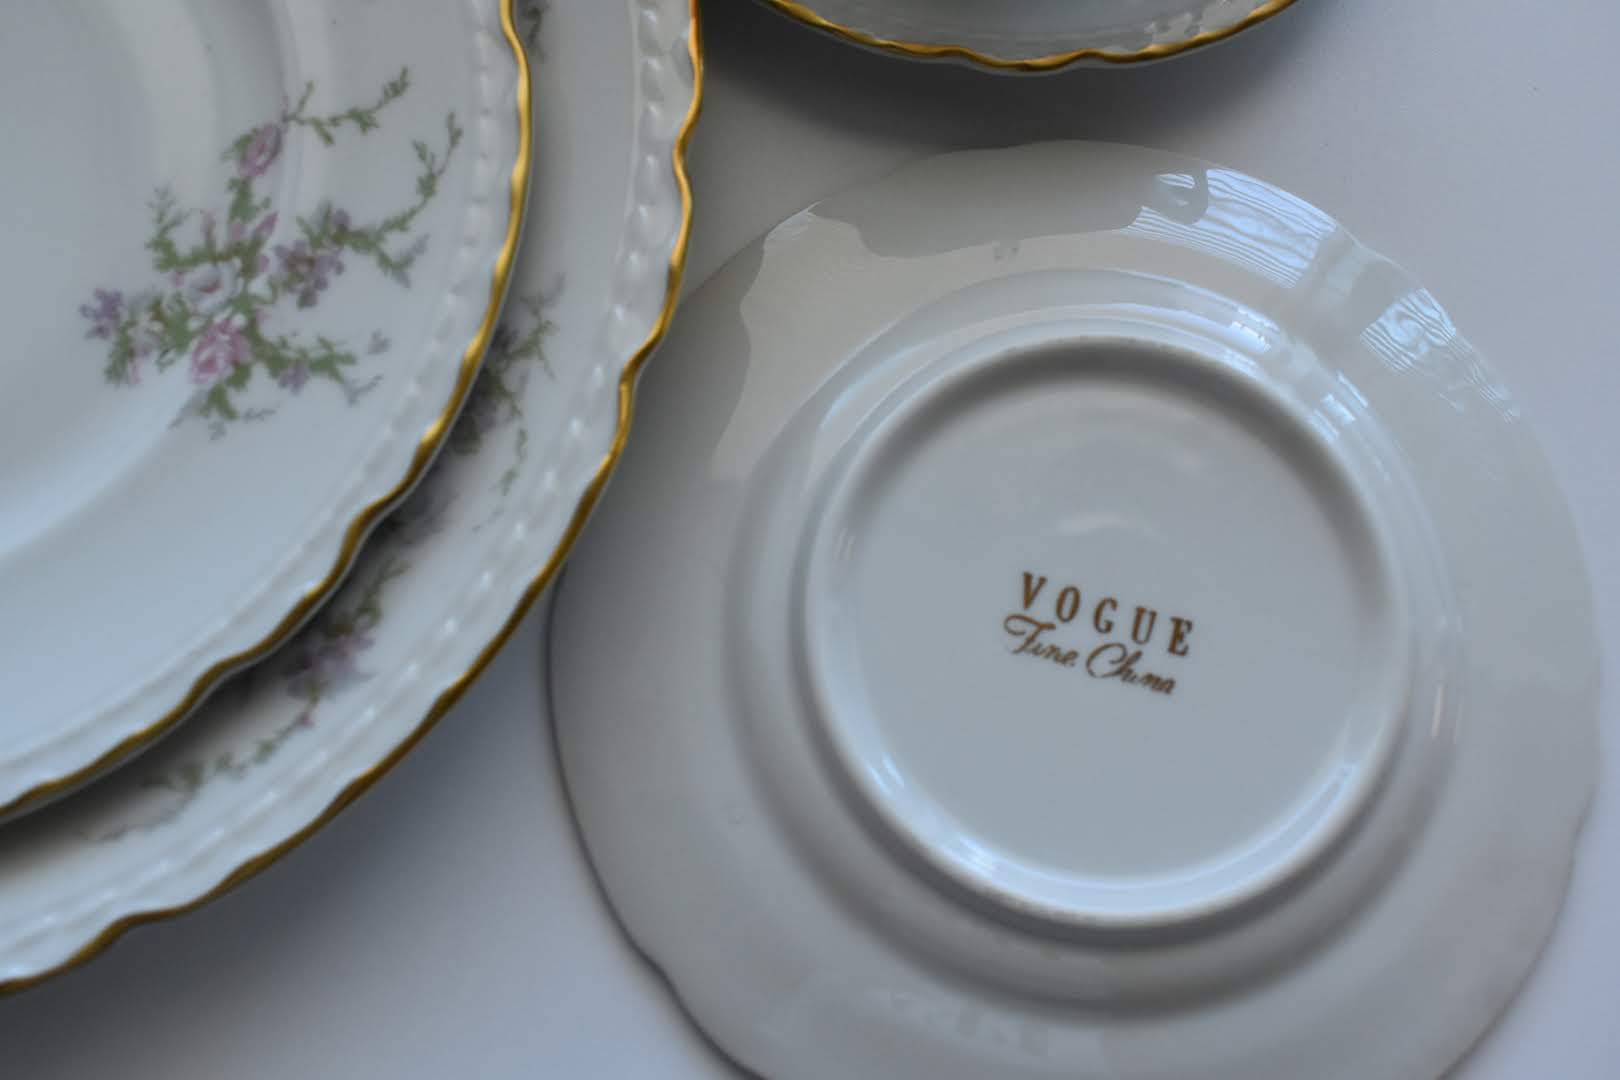 Vogue - Fine Porcelain China - Floral Pattern - 5 piece dinner set